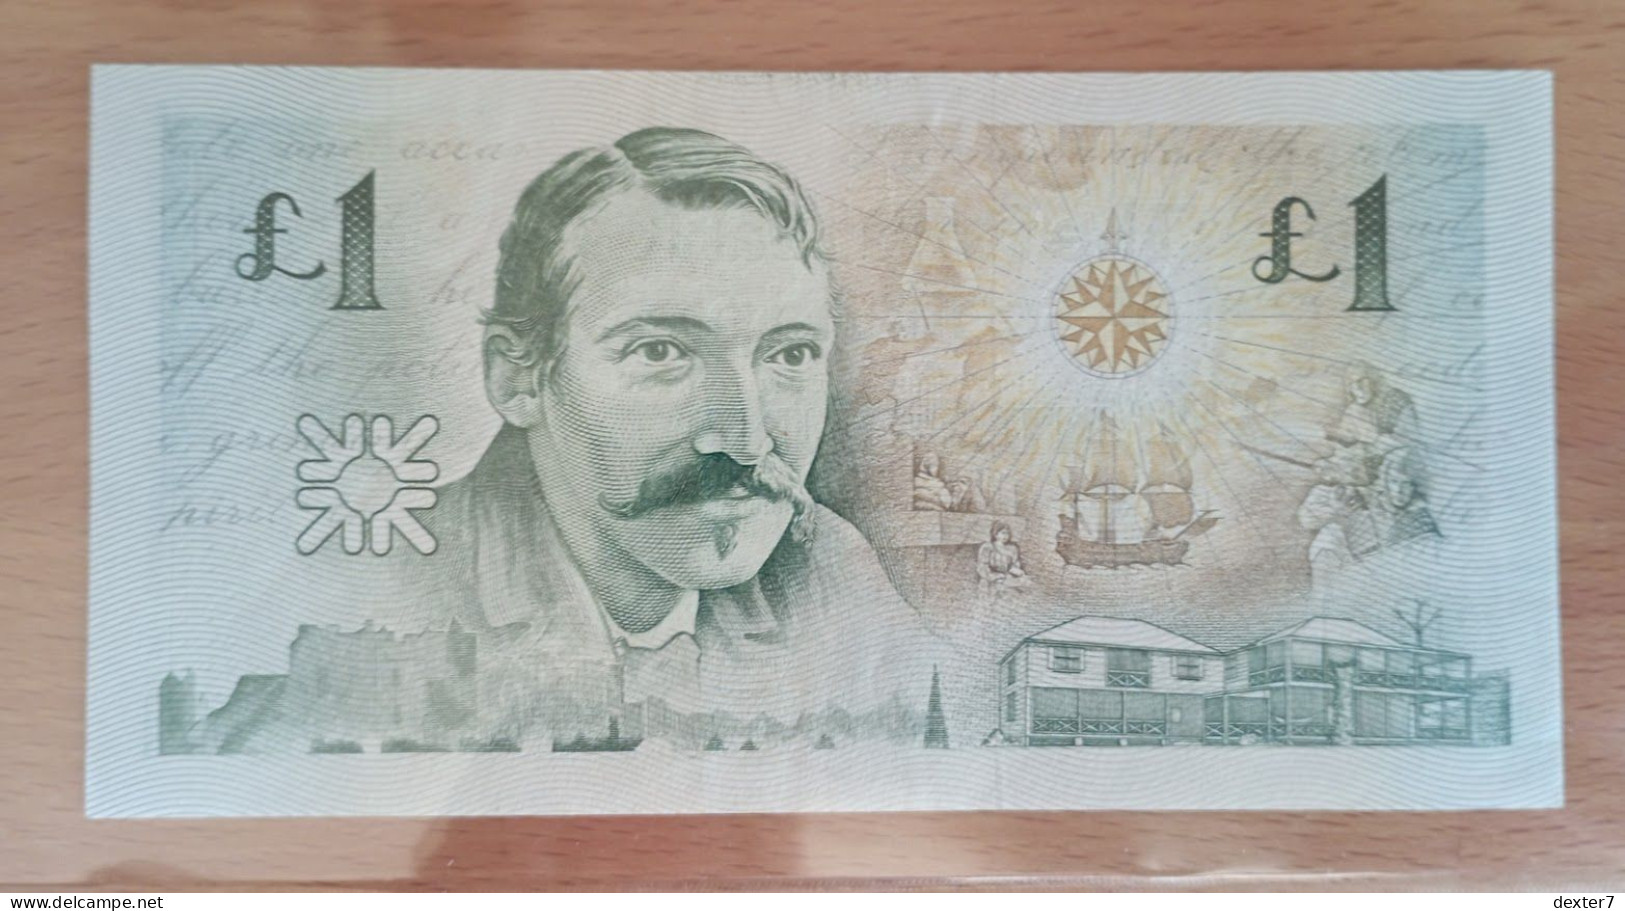 Scotland 1 Pound 1994 XF AUNC Royal Bank Of - 1 Pound